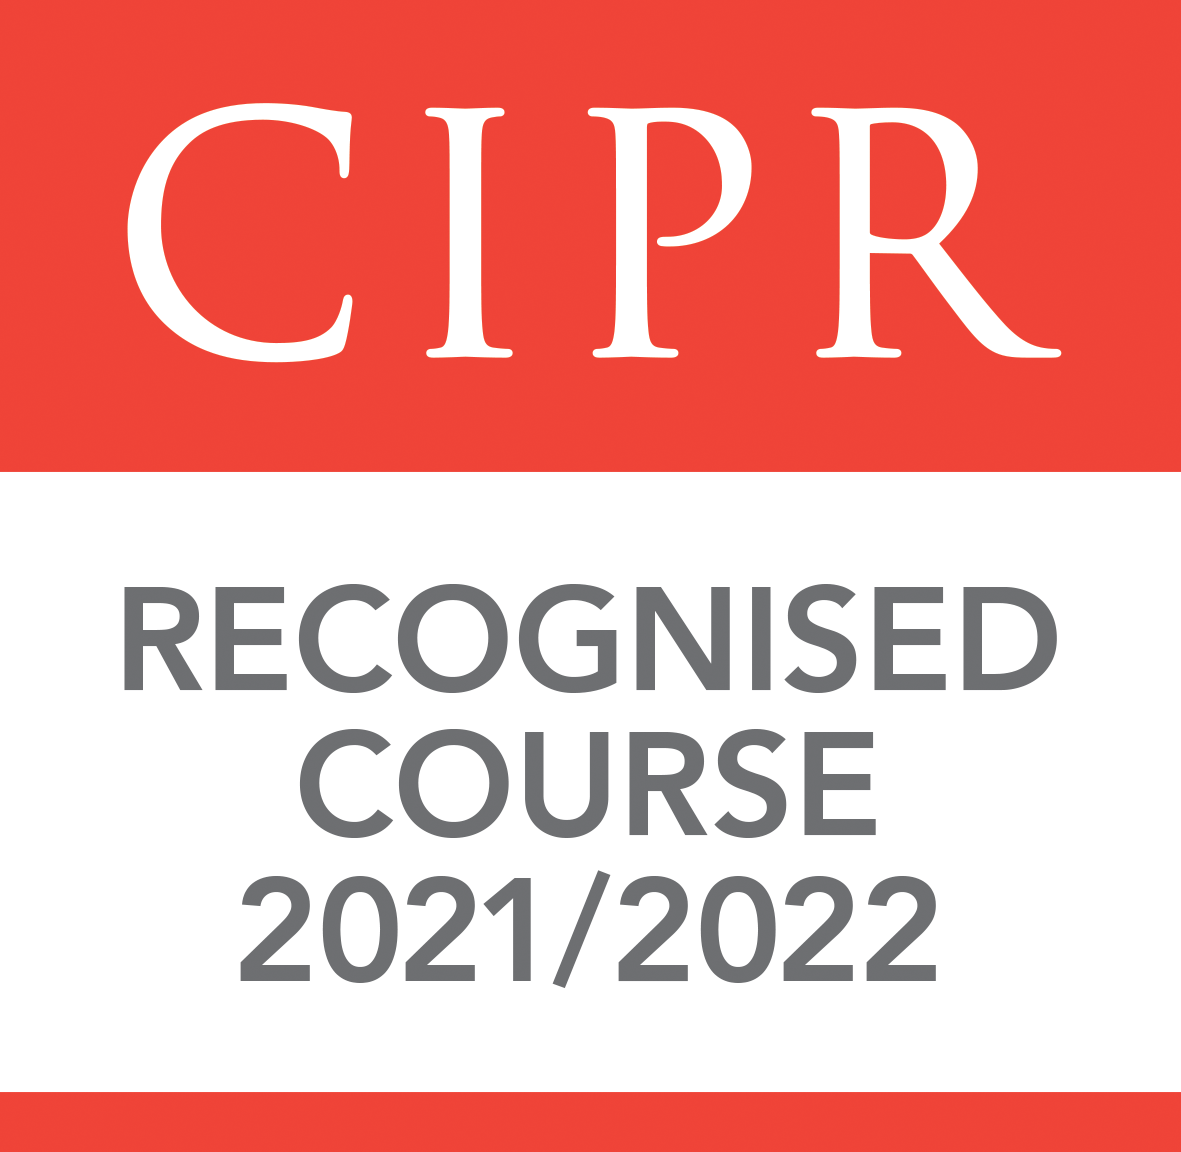 CIPR course recognition 2021-2022